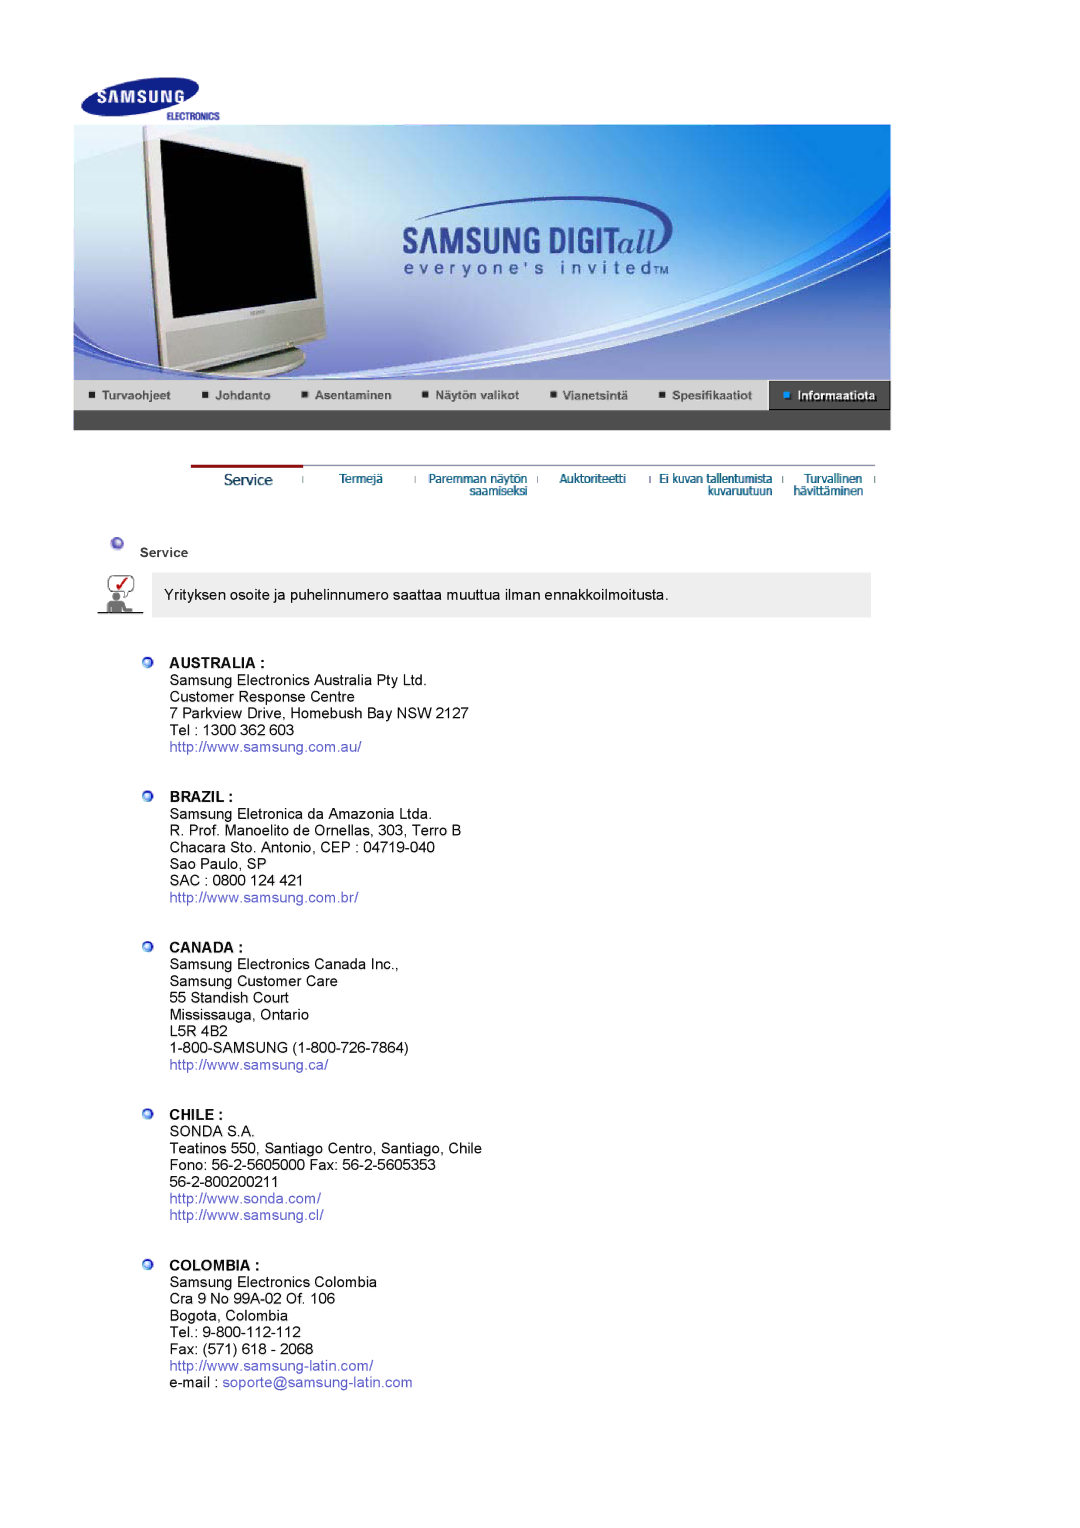 Samsung LS17MCASS/EDC manual Australia Brazil, Canada, Chile Sonda S.A, Colombia 